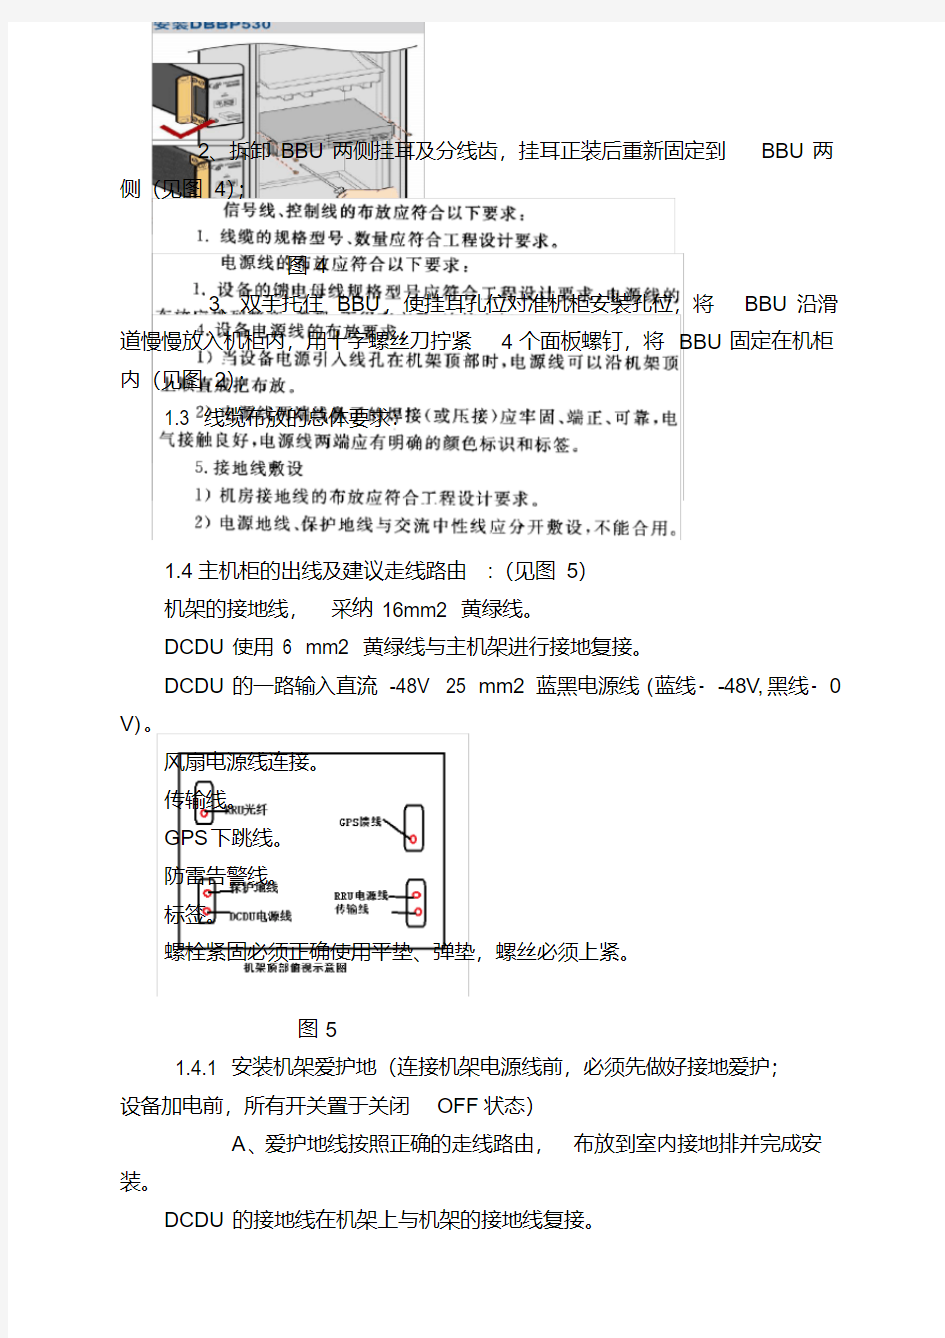 华为TD-SCDMA基站设备安装作业指导书